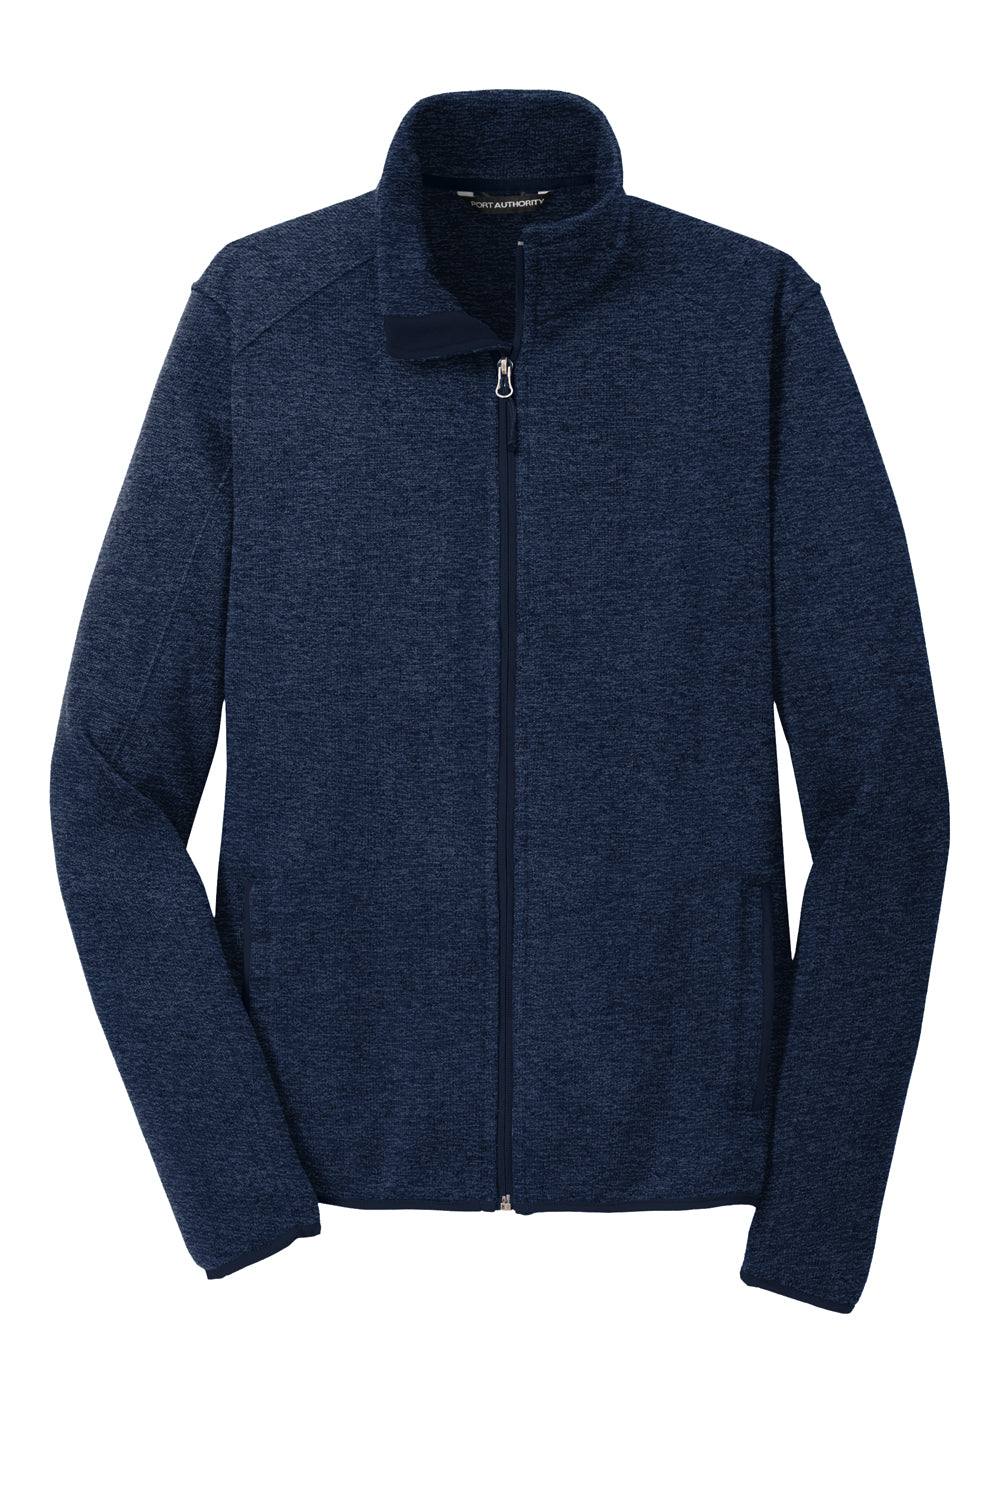 Port Authority Mens Full Zip Sweater Fleece Jacket Heather River Navy Blue Flat Front